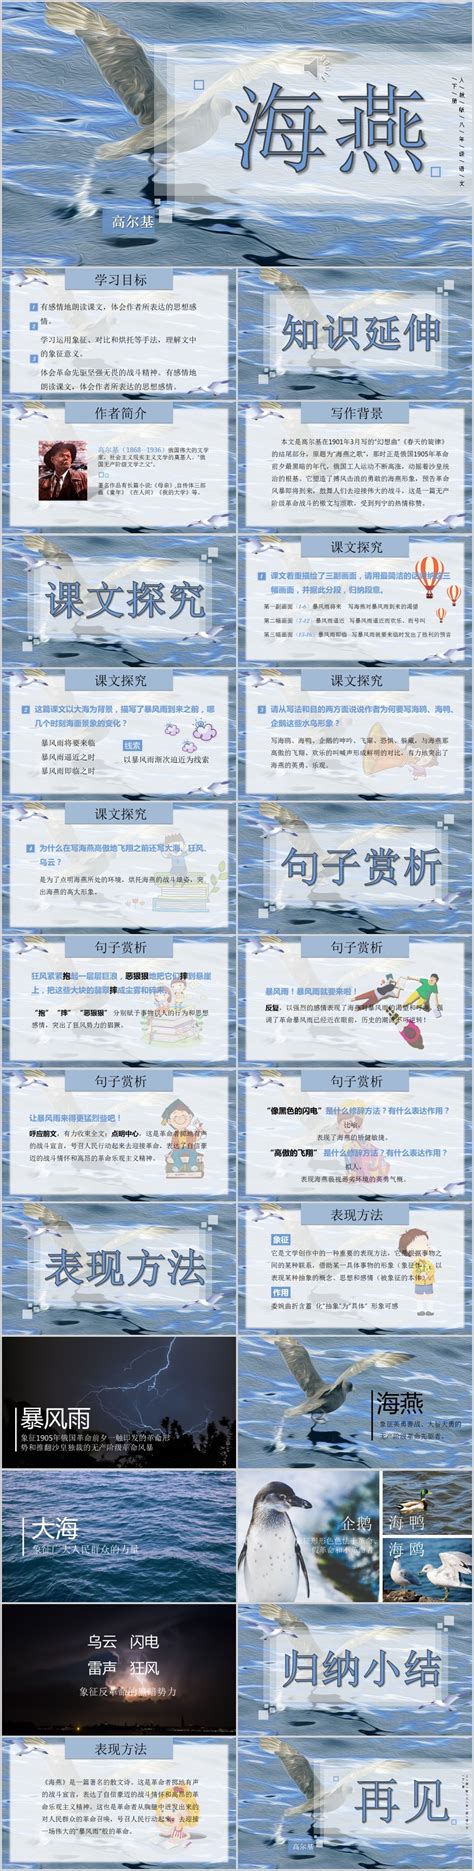 初中语文课件PPT《海燕》-PPT模板-图创网